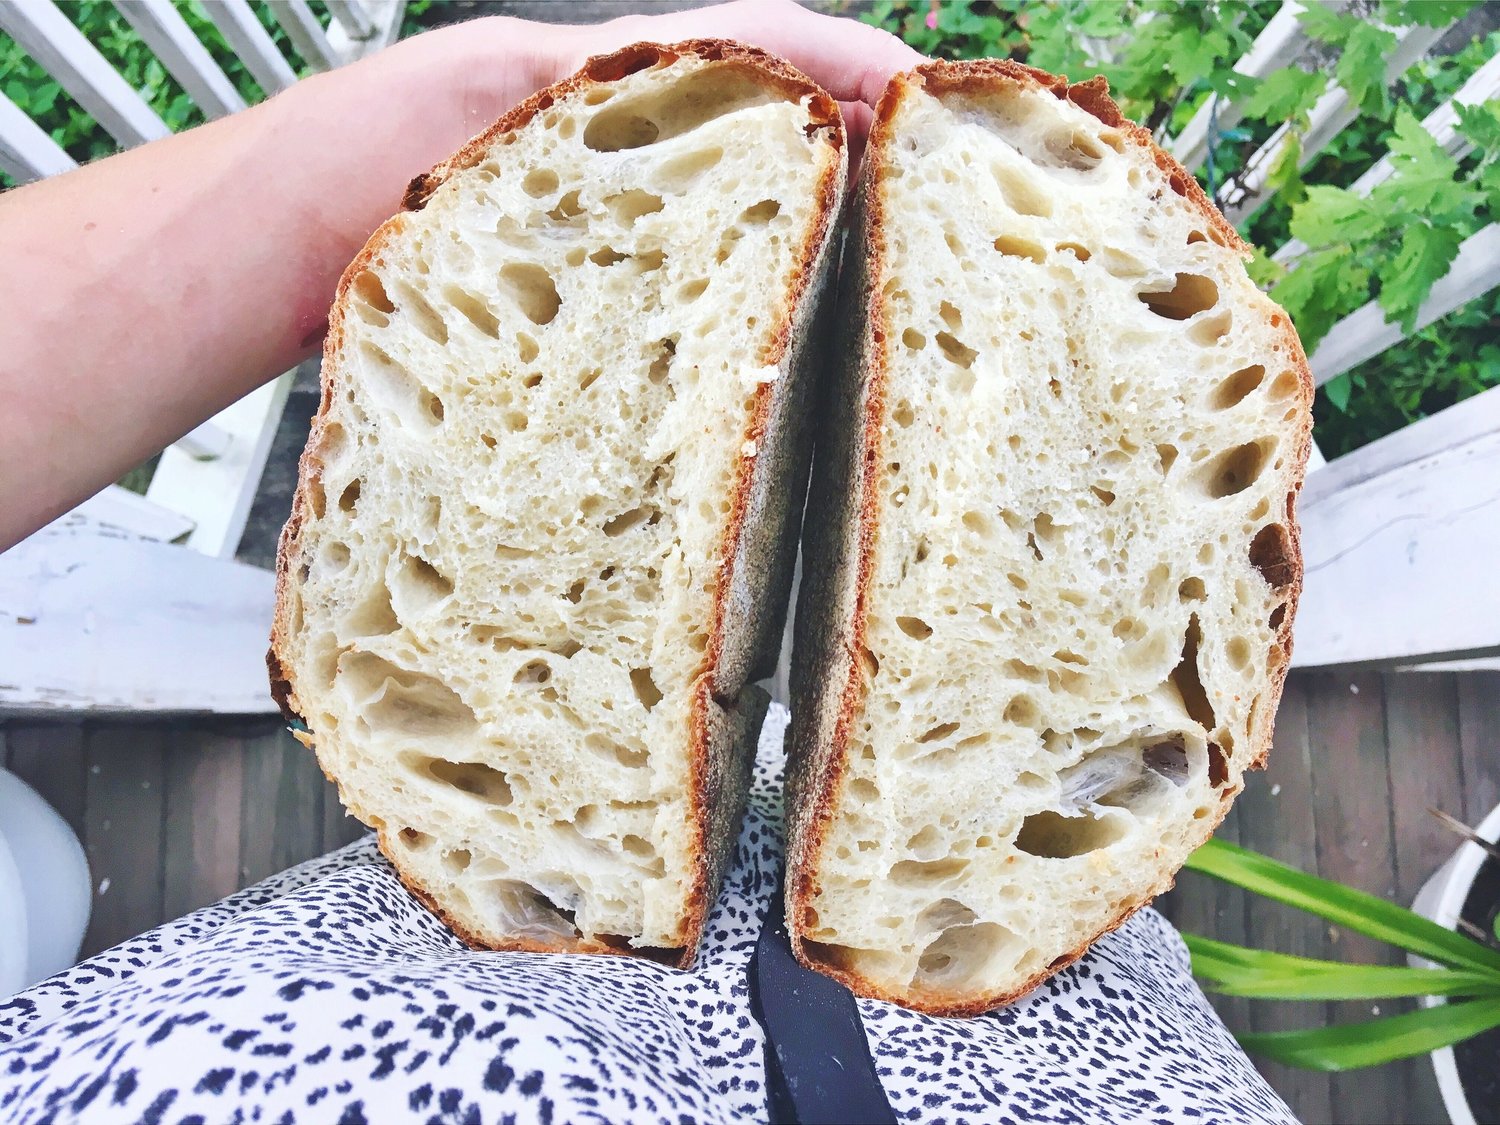 Rüyada Ekmek Yapan Birini Görmek - Rüya Meali